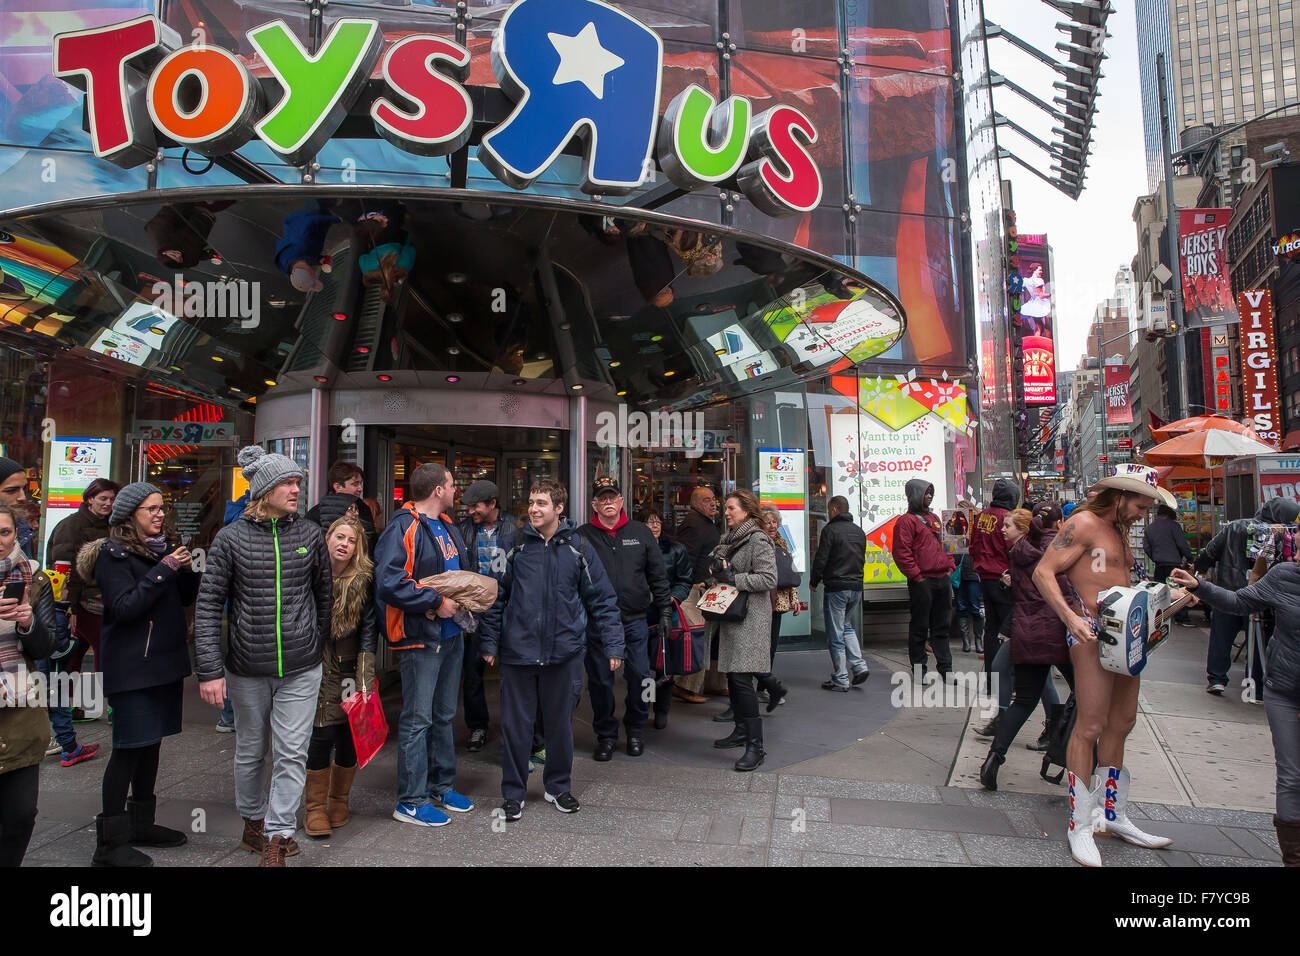 New York, USA. 3 Décembre, 2015. La saison de Noël commence dans la ville de New York. Le 83ème arbre de Noël du Rockefeller Center s'est allumée, au milieu de préoccupations des terrorizim en toute sécurité. Les consommateurs sont occupés à Times Square dans les magasins comme Toys R Us qui s'ouvre dans trois semaines en raison d'une augmentation de loyer. Noël dans la ville de New York est toujours un moment spécial pour beaucoup de New-Yorkais et pour les gens de partout dans le monde même avec les préoccupations des attaques terroristes de Paris étant répétée à Manhattan. Crédit : Scott Houston/Alamy Live News Banque D'Images